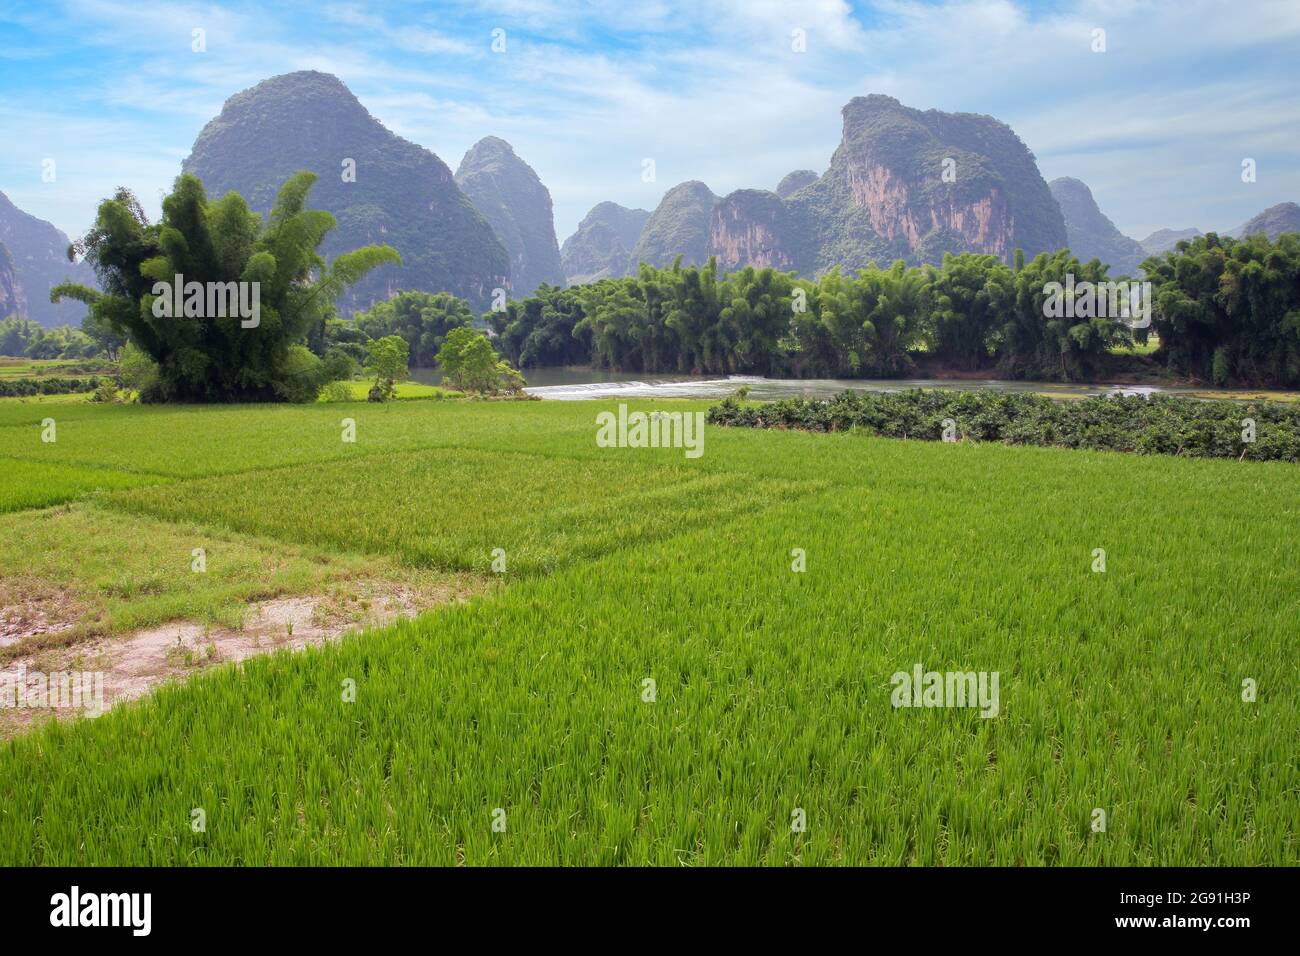 Malerische Landschaft mit Reisfeldern, fließenden Flüssen und Kalksteinhügeln in der Nähe von Yangshuo, China Stockfoto